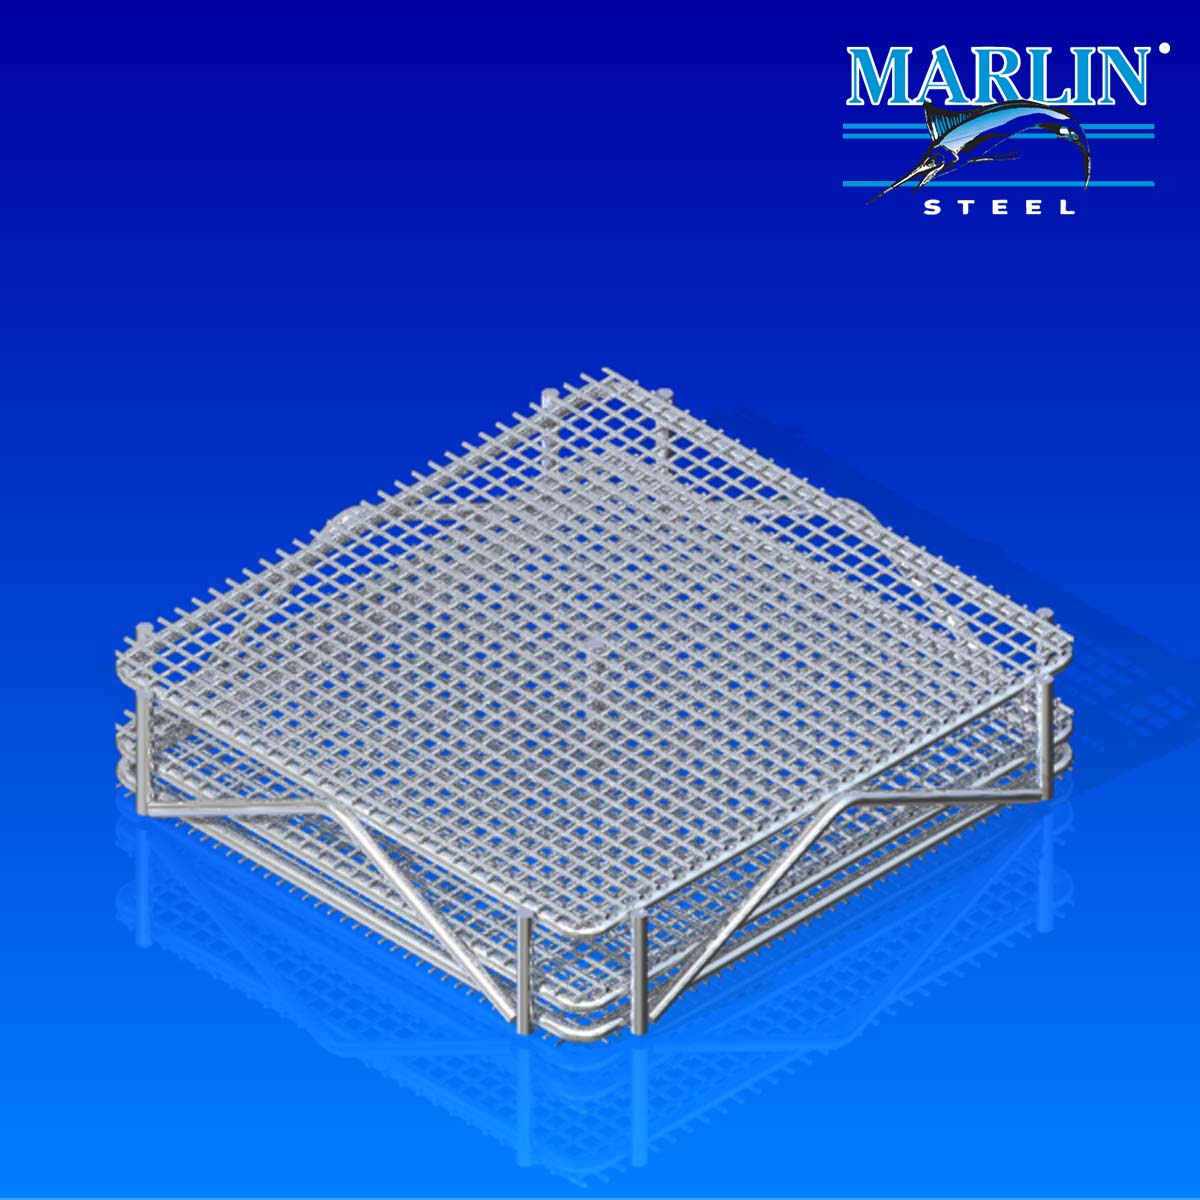 Marlin Steel wire baskets with lids 784001.jpg